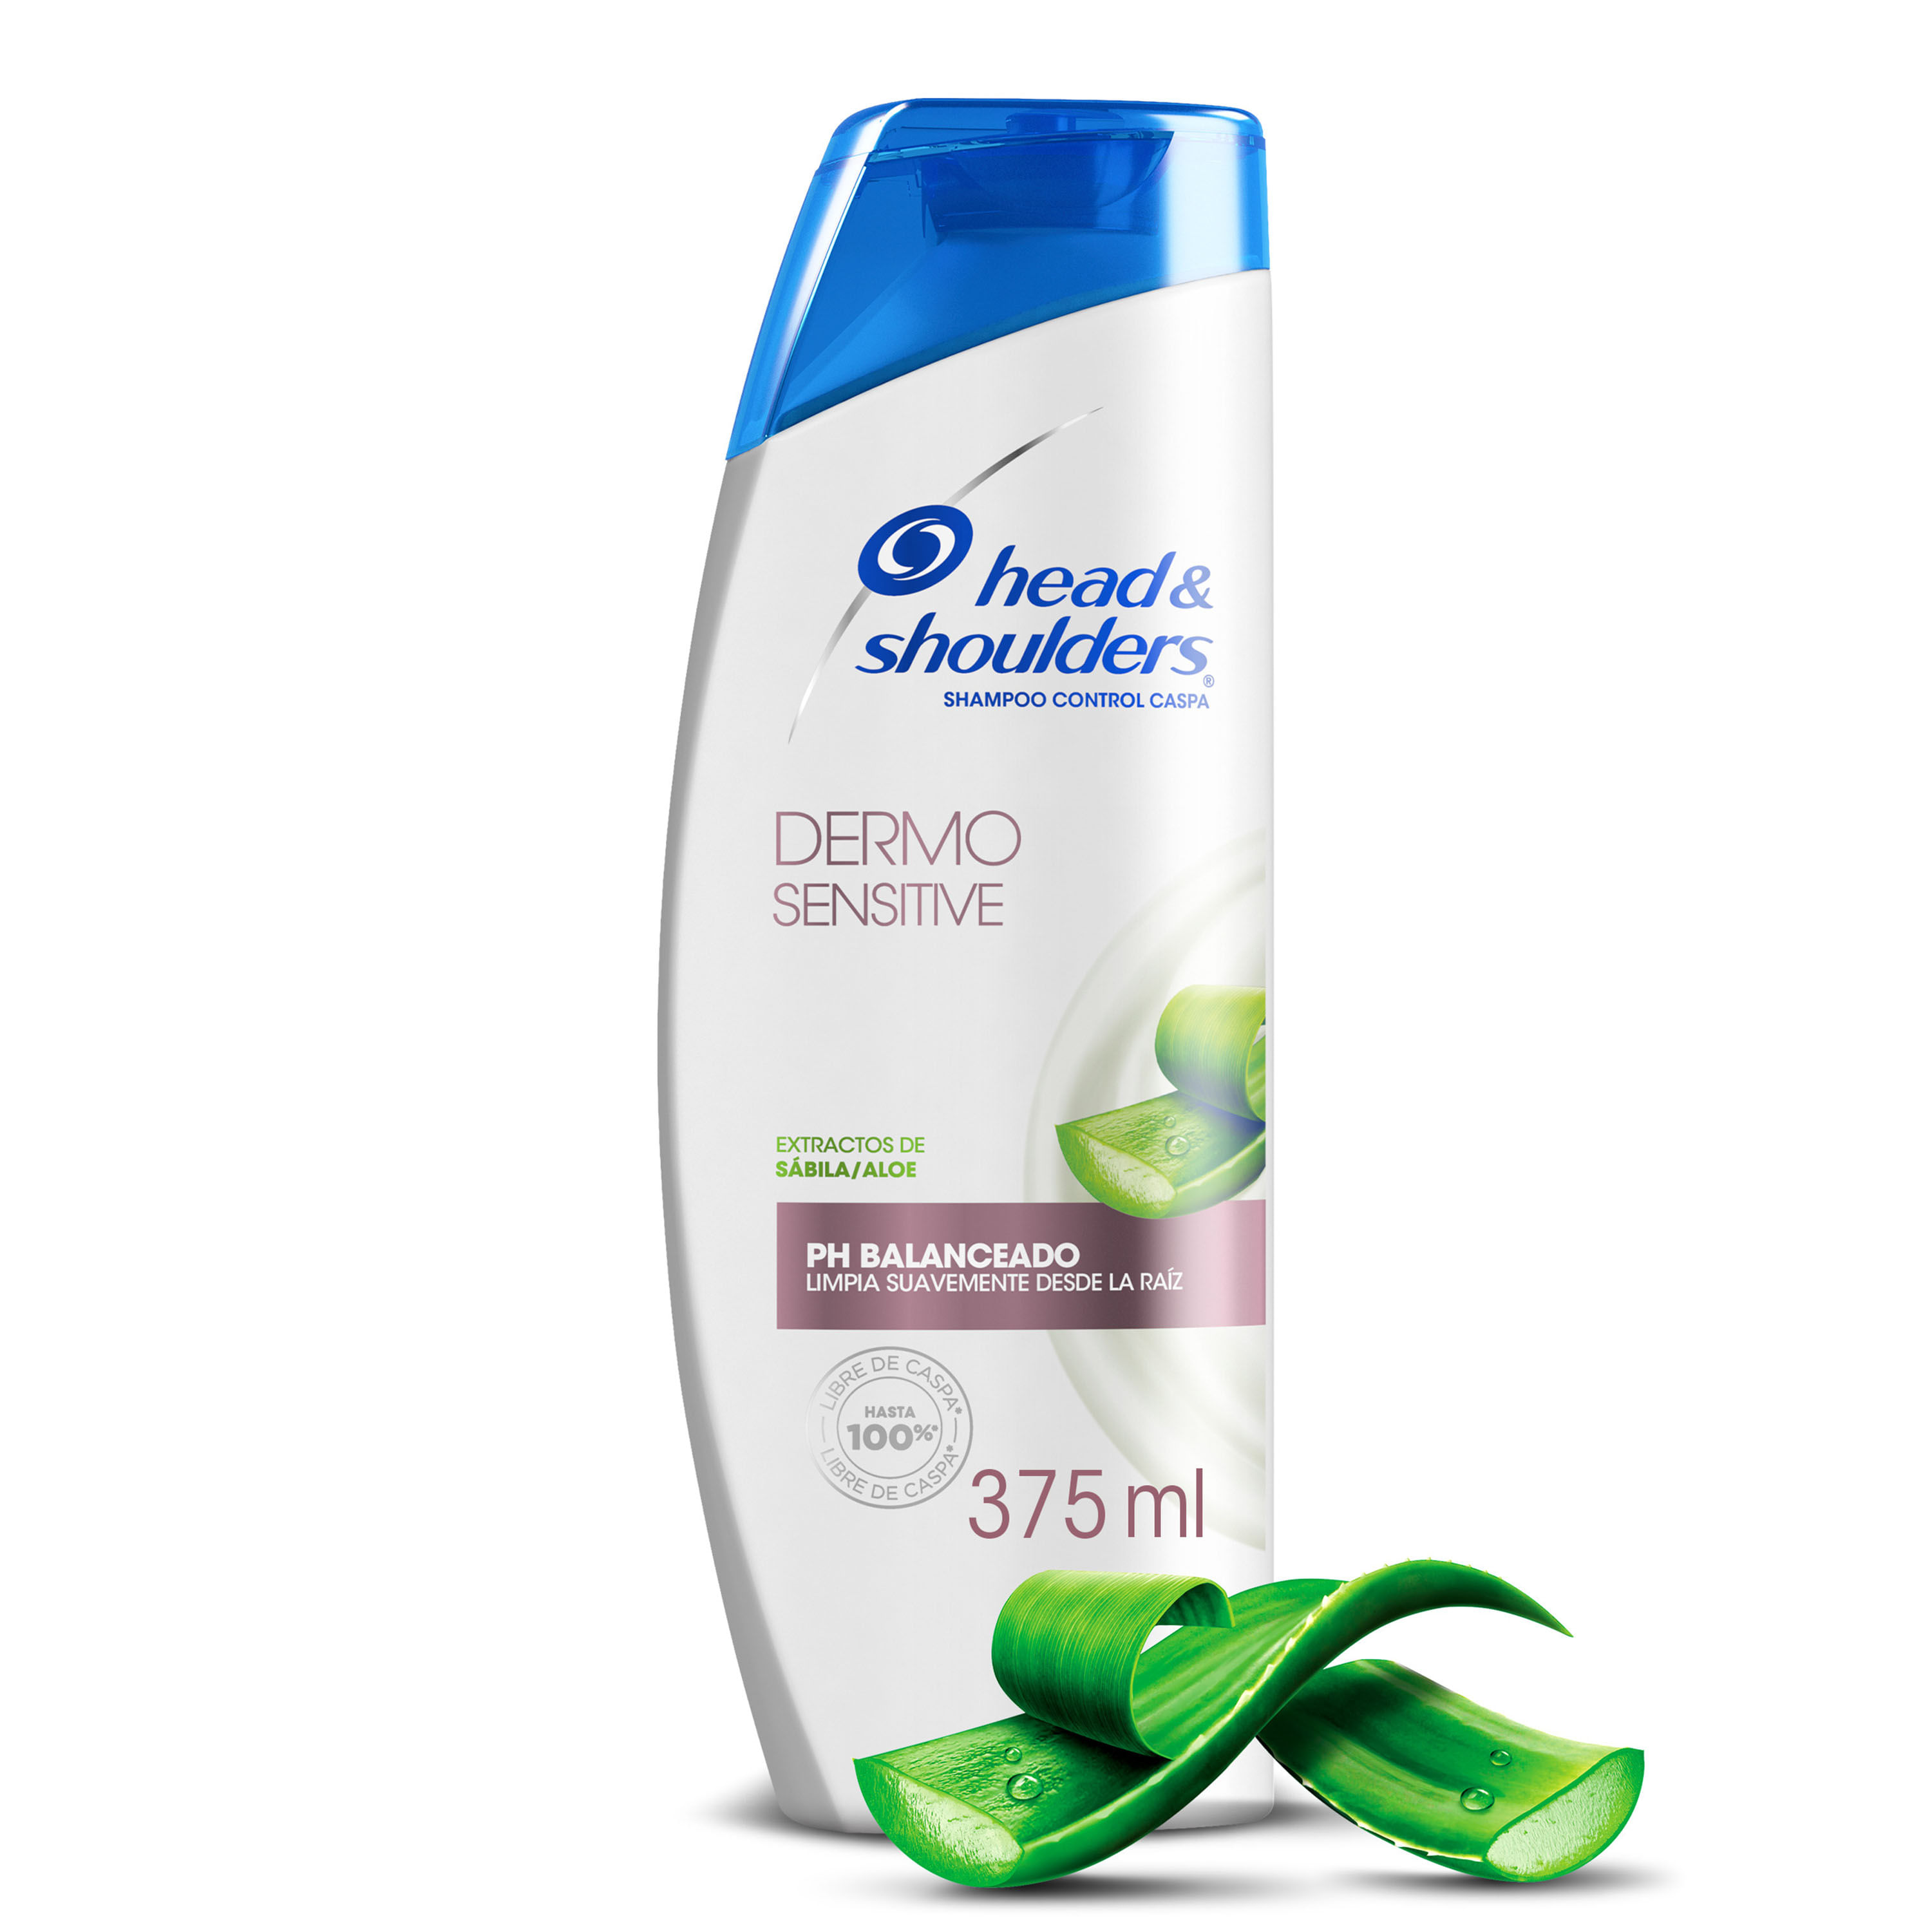 Shampoo-Head-Shoulders-Dermo-Sensitive-Extractos-de-S-bila-Aloe-375ml-1-48770